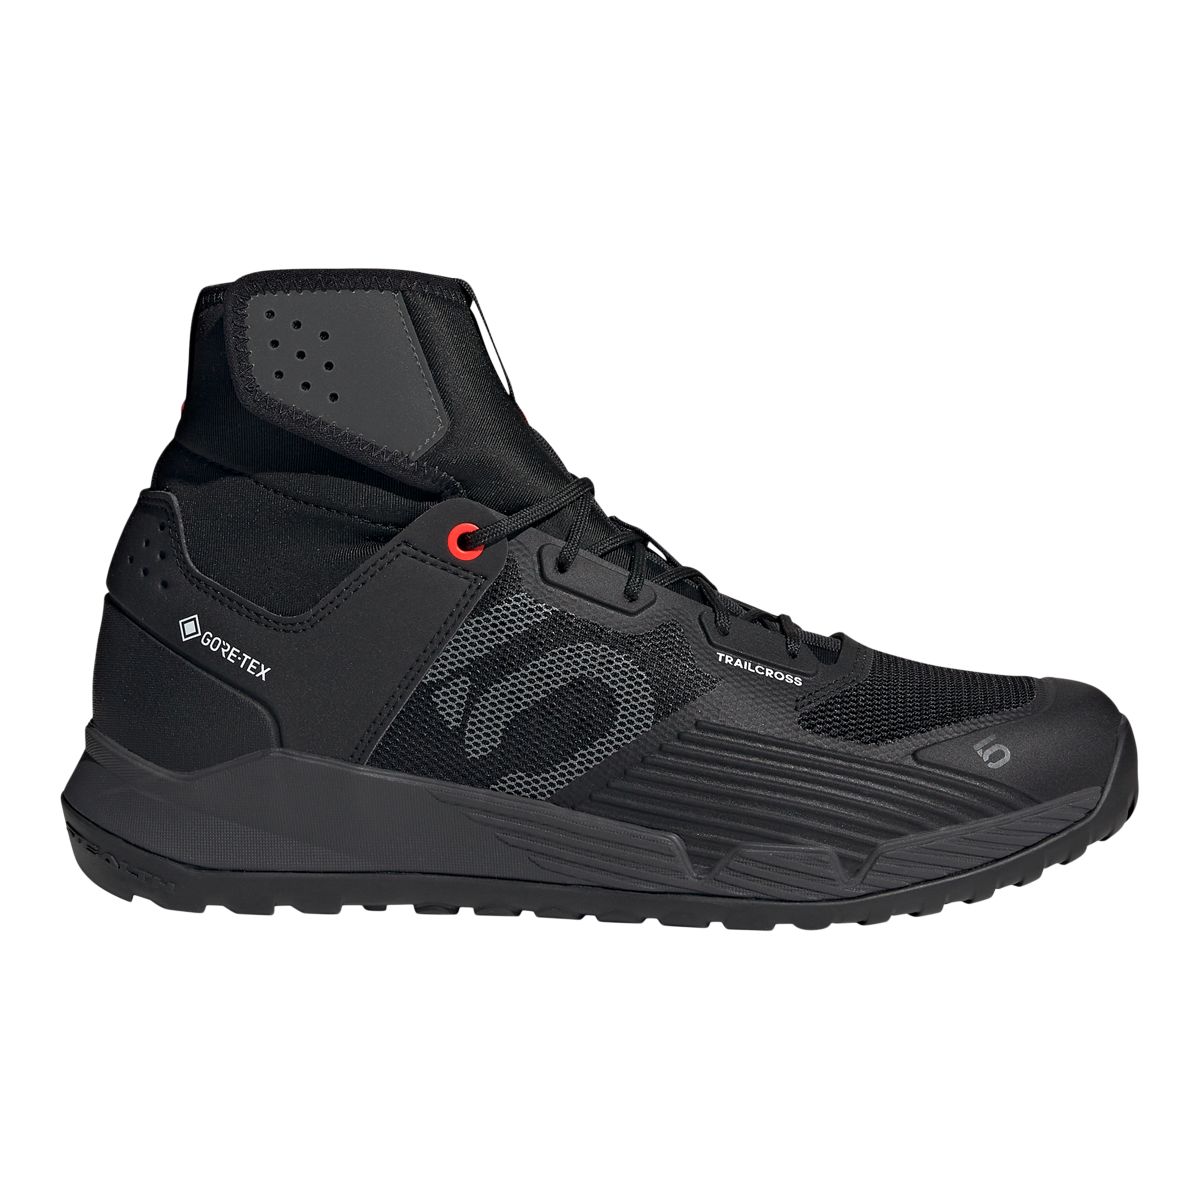 Image of adidas Men's Five Ten Trail Cross Mountan Bike Shoes Hiking Gore-Tex Waterproof